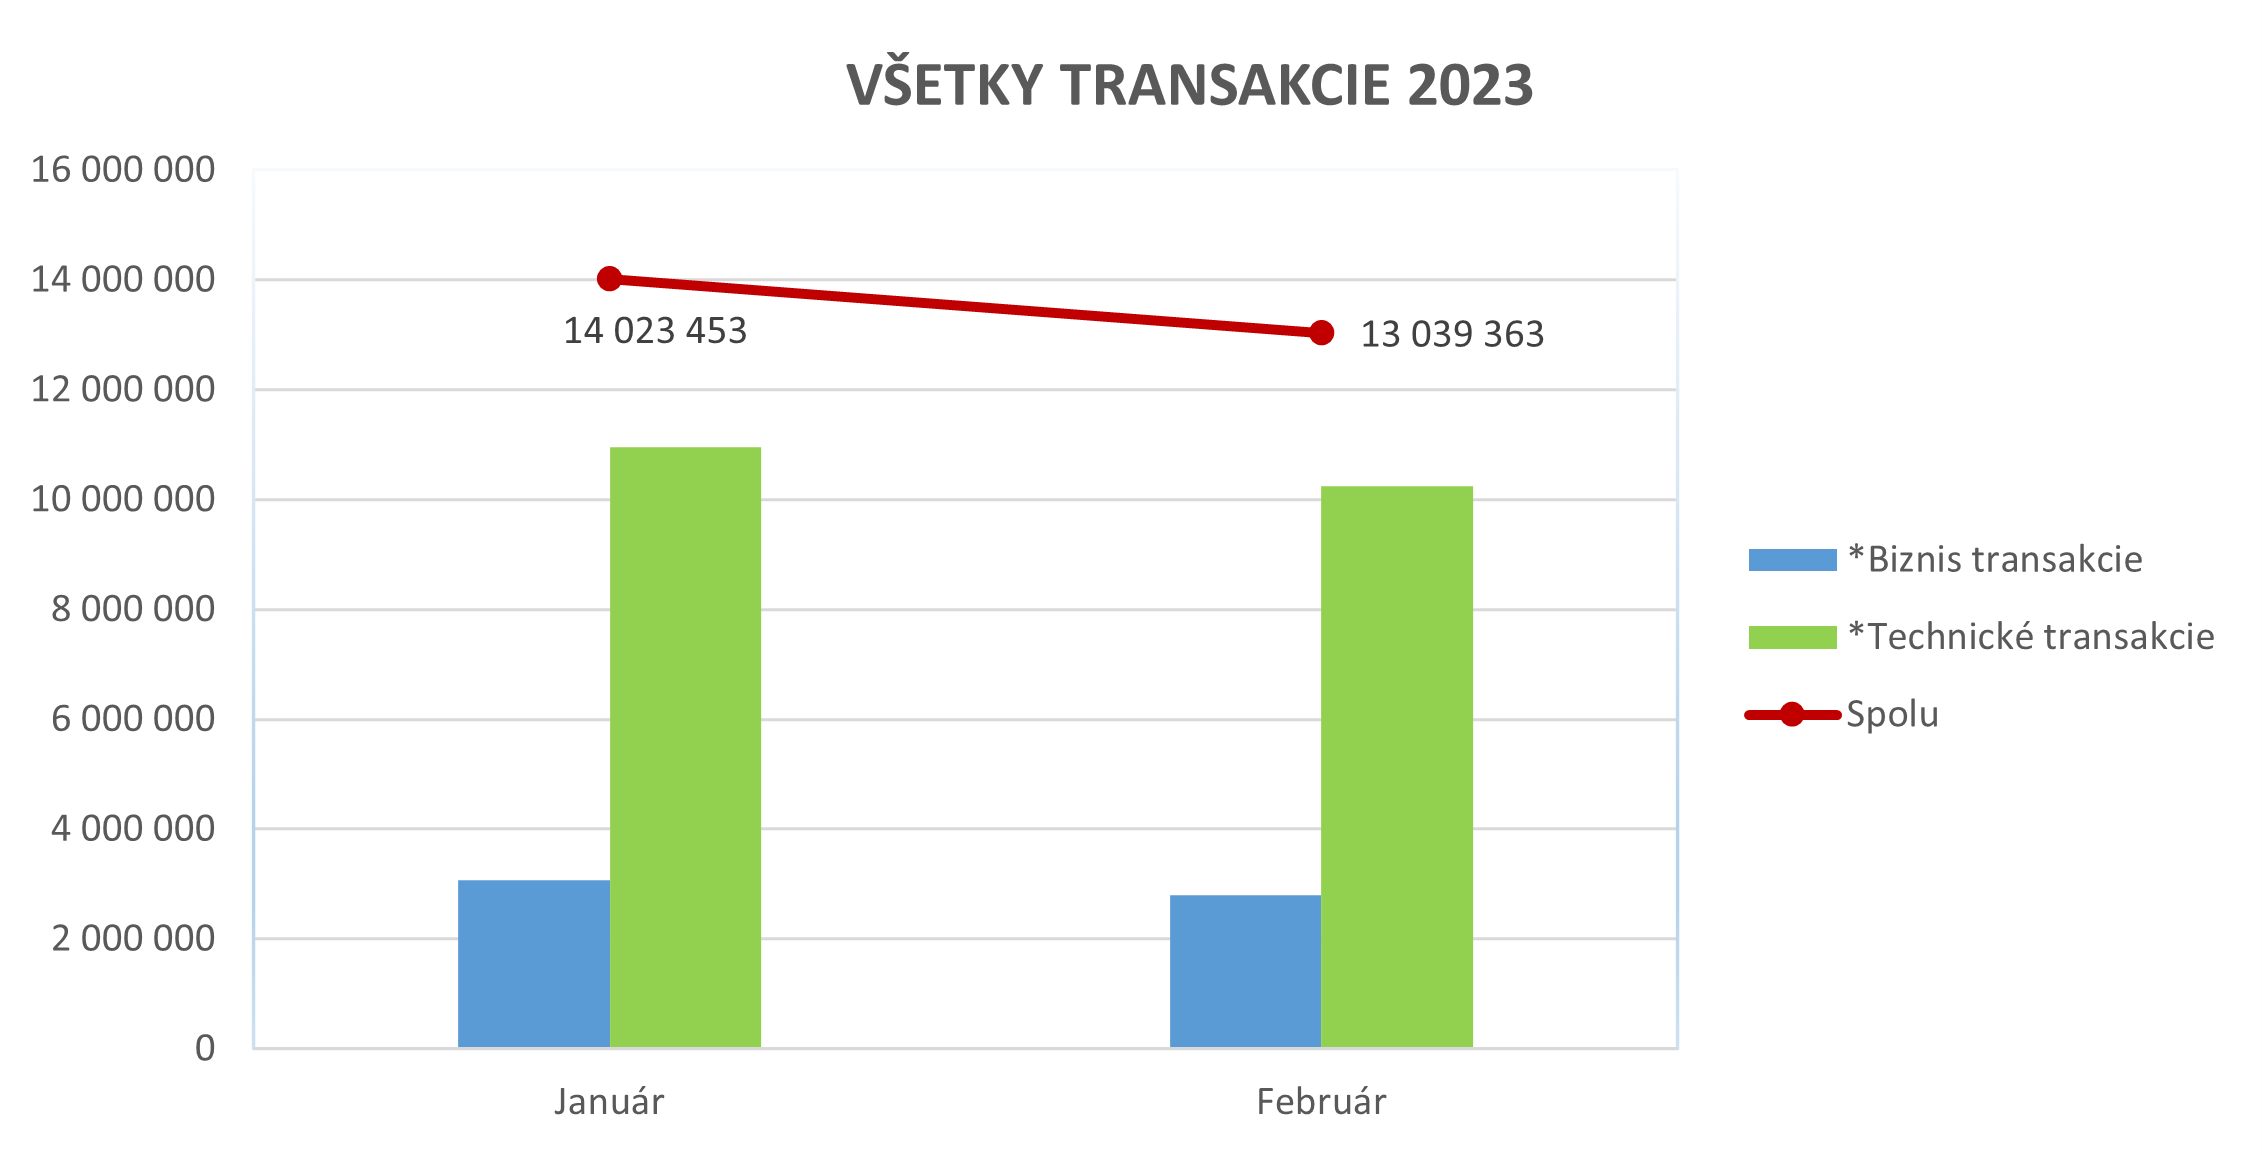 Ilustračný stĺpcový graf zobrazujúci všetky transakcie za rok 2023.